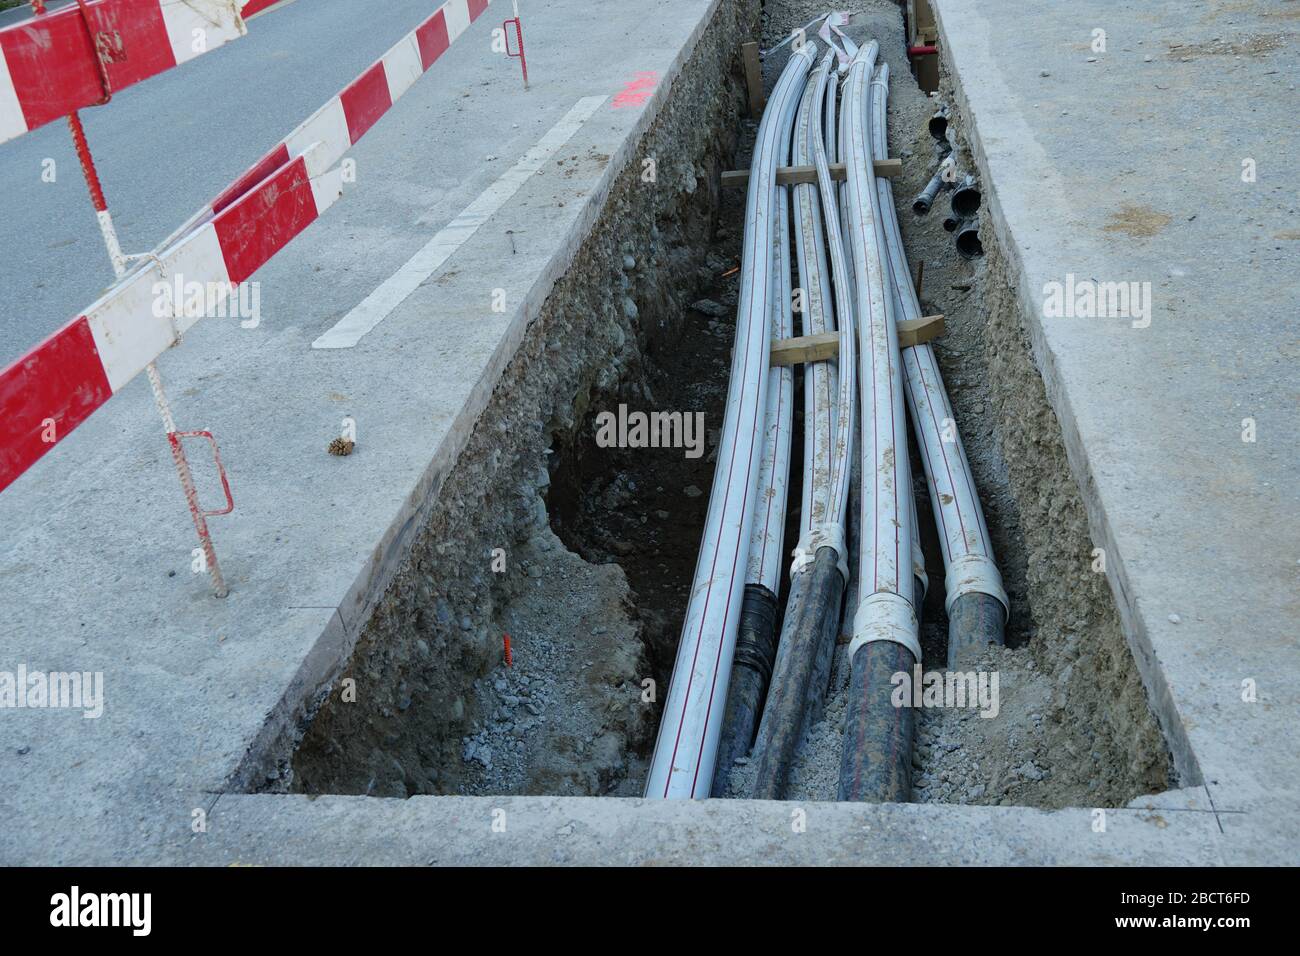 tuyaux épais en polypropylène dans un puits de construction dans une rue de chantier de génie civil avec des planches de barrière en rouge et blanc, Banque D'Images